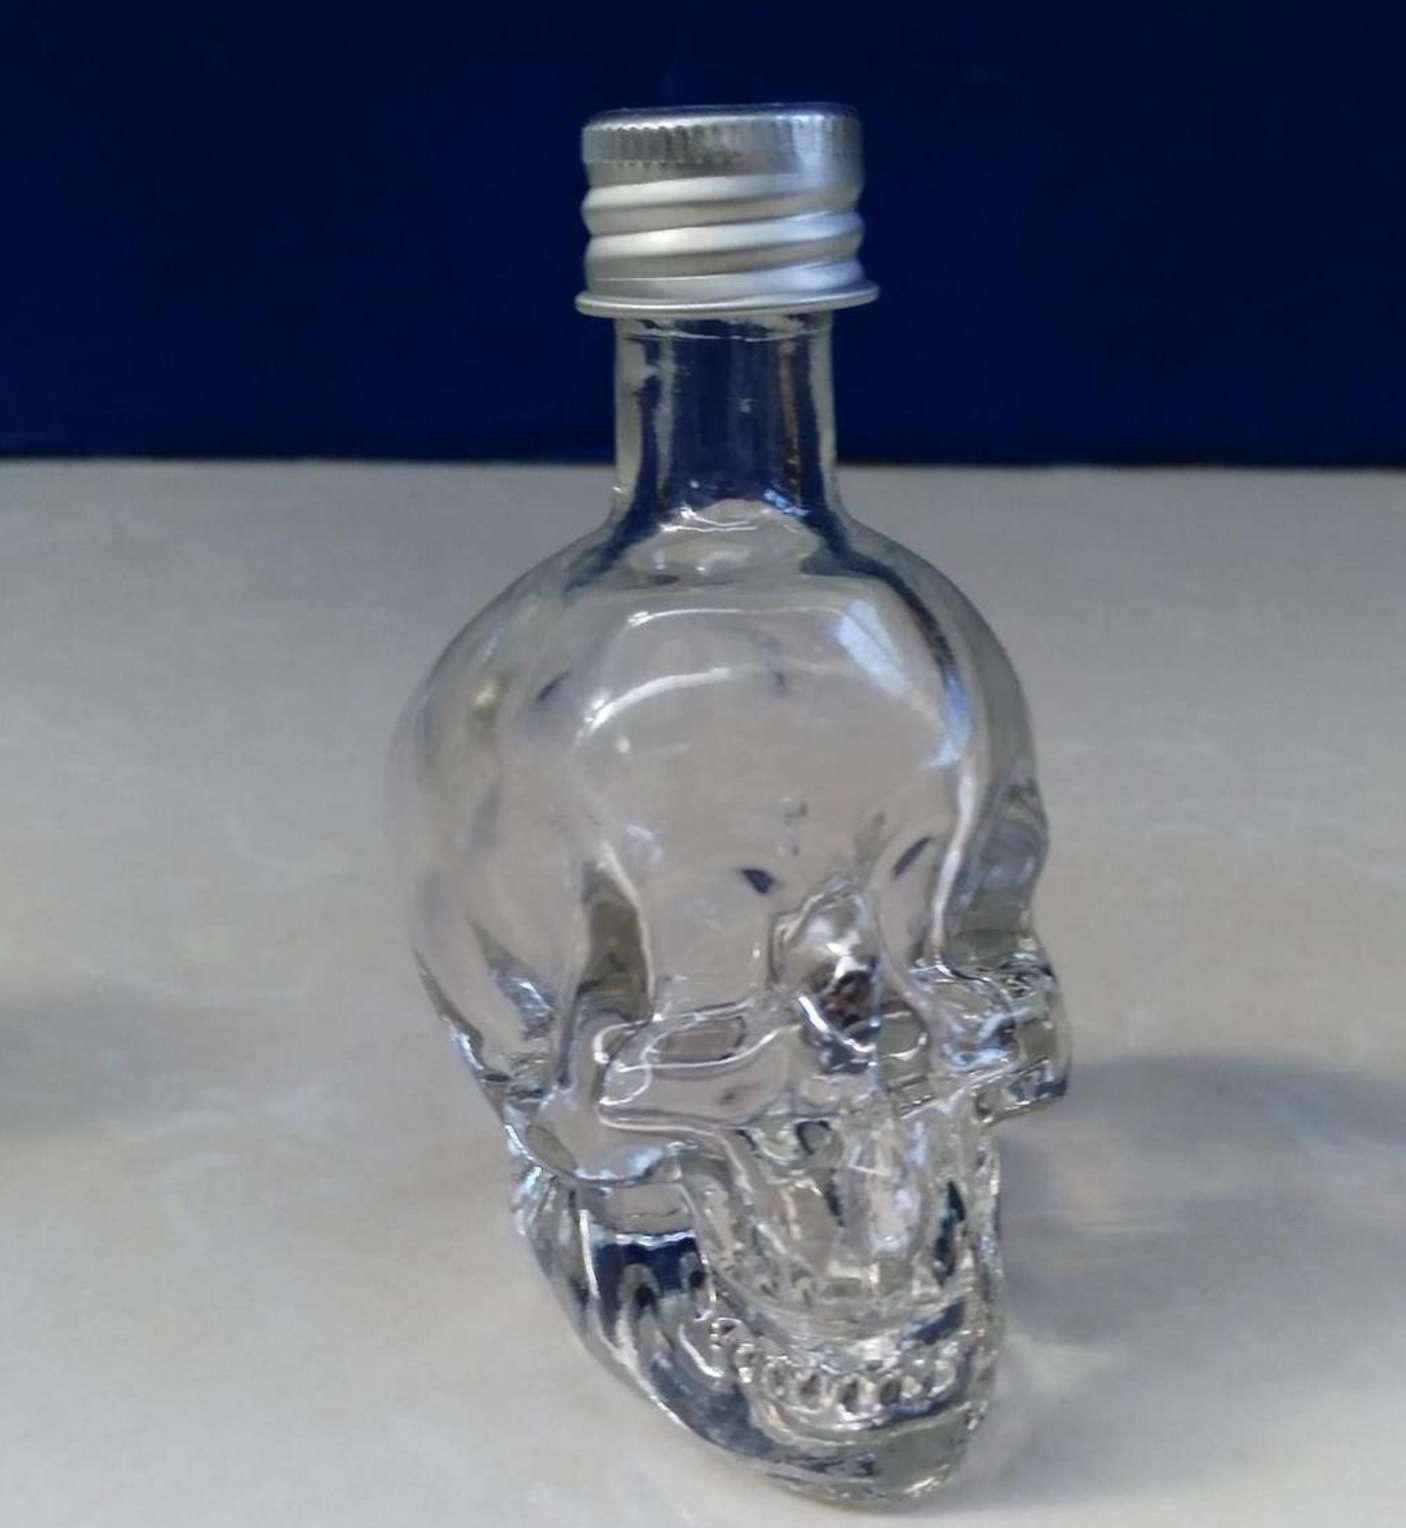 50ml skull perfume glass bottle